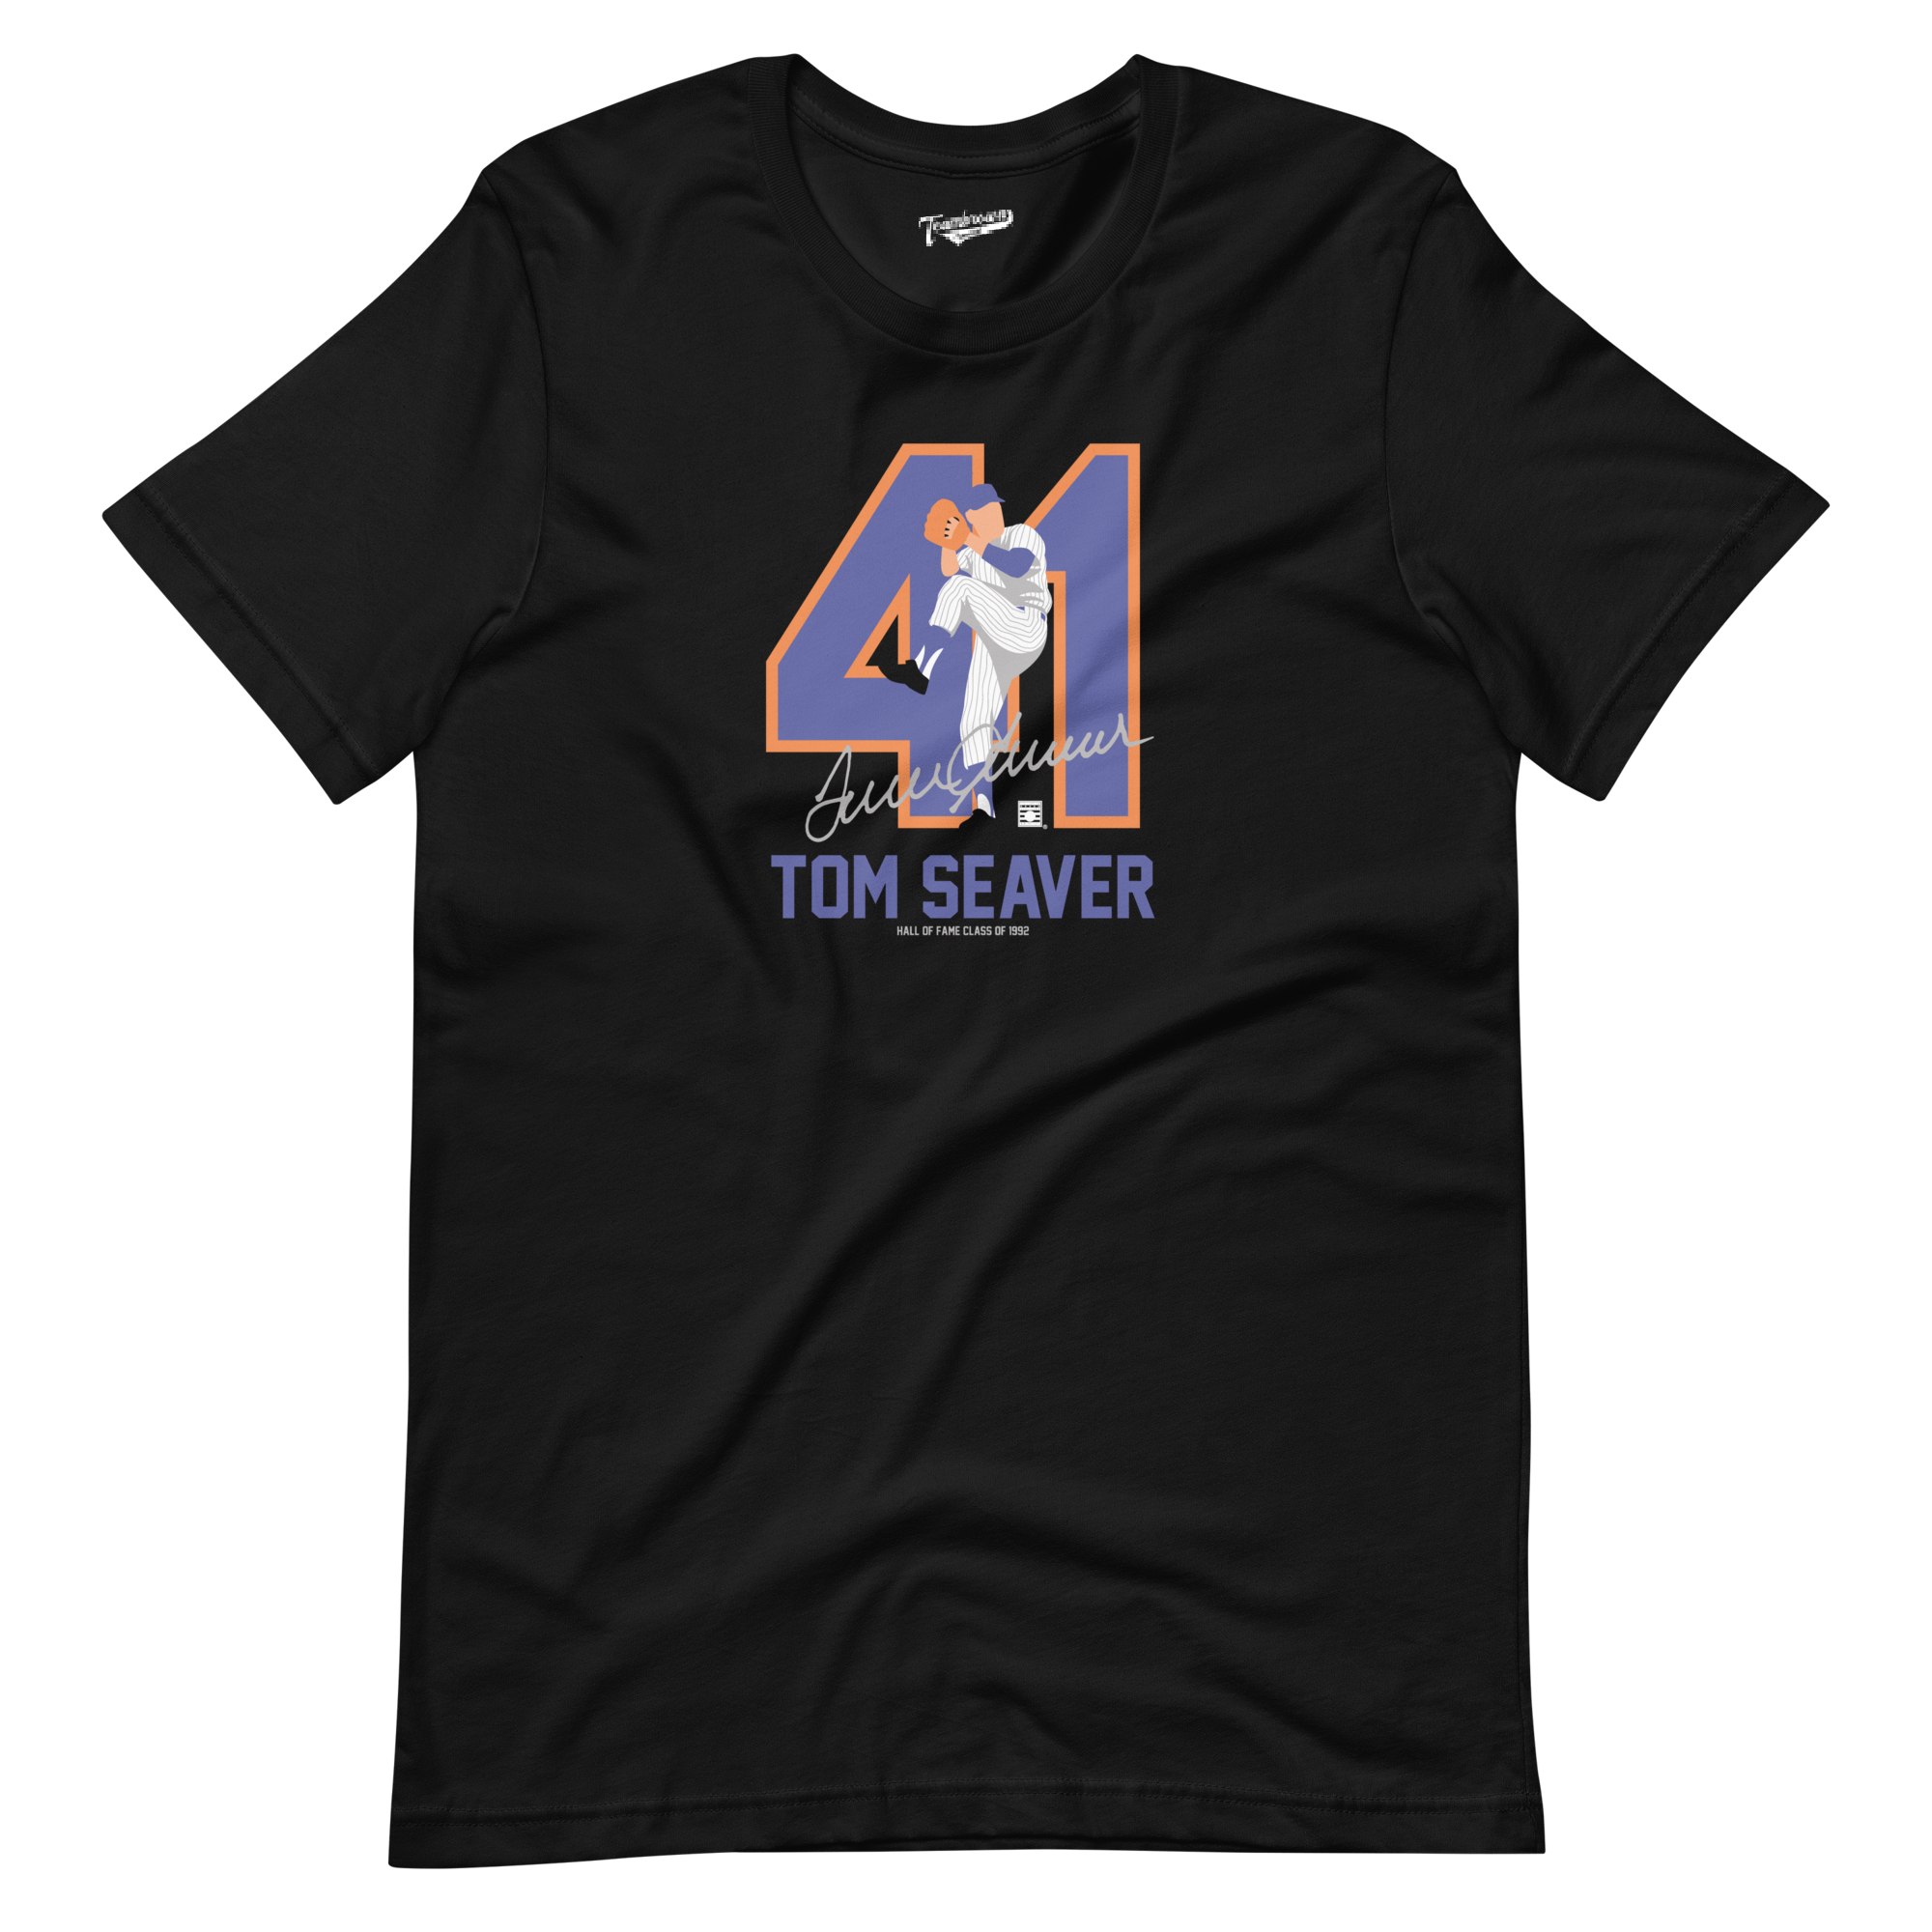 Baseball Hall of Fame Members - Tom Seaver - Silhouette - Unisex T-Shirt